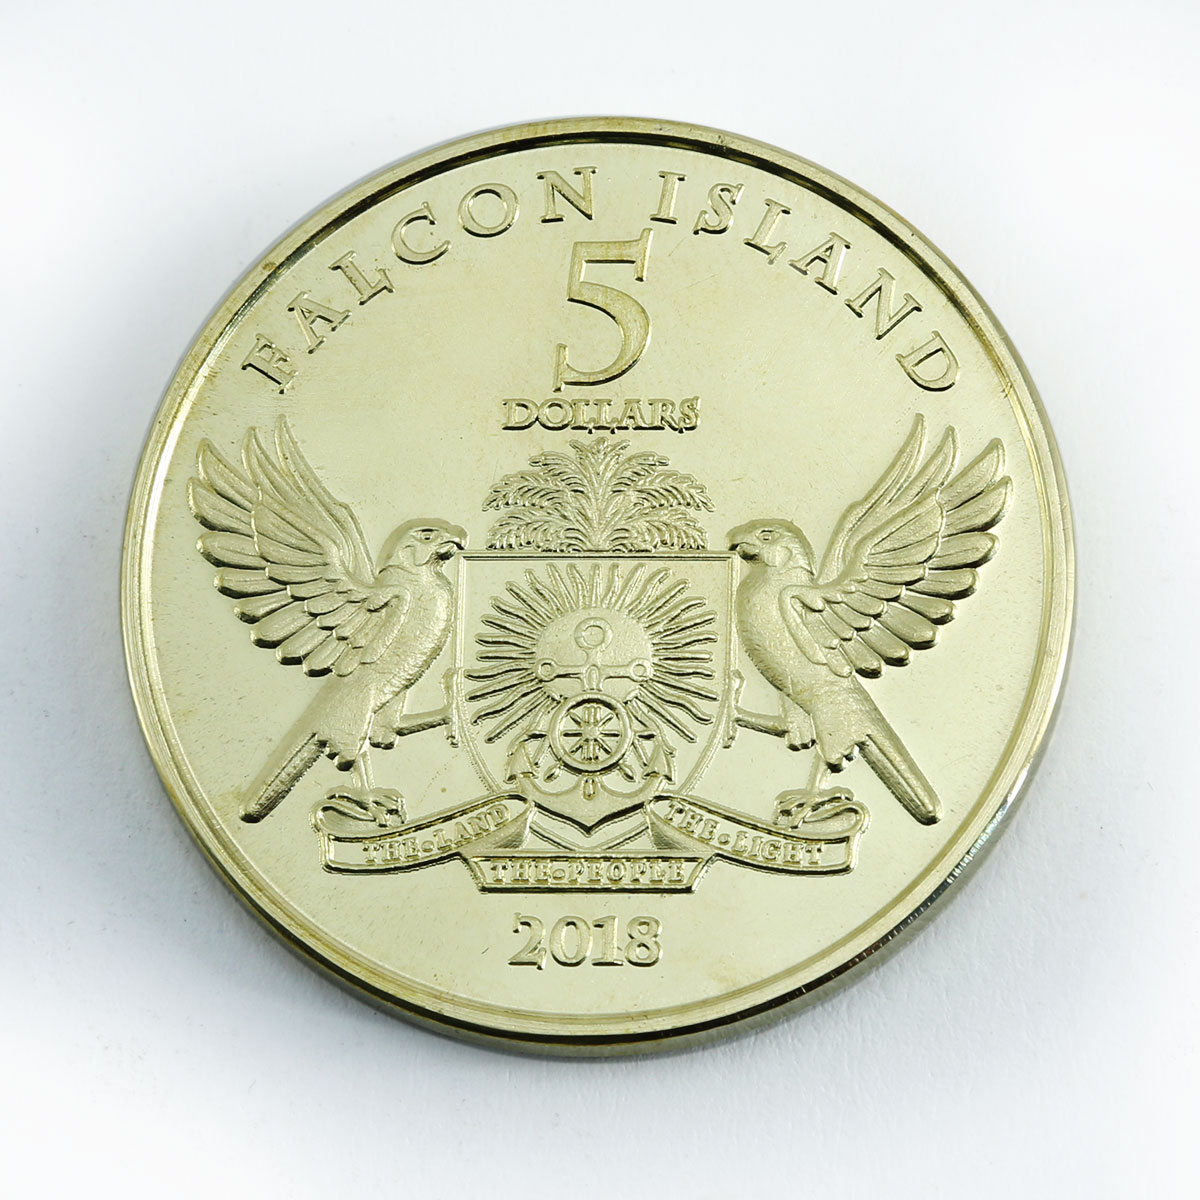 Falcon Island 5 dollars Siberian birds Golden eagle coin 2018